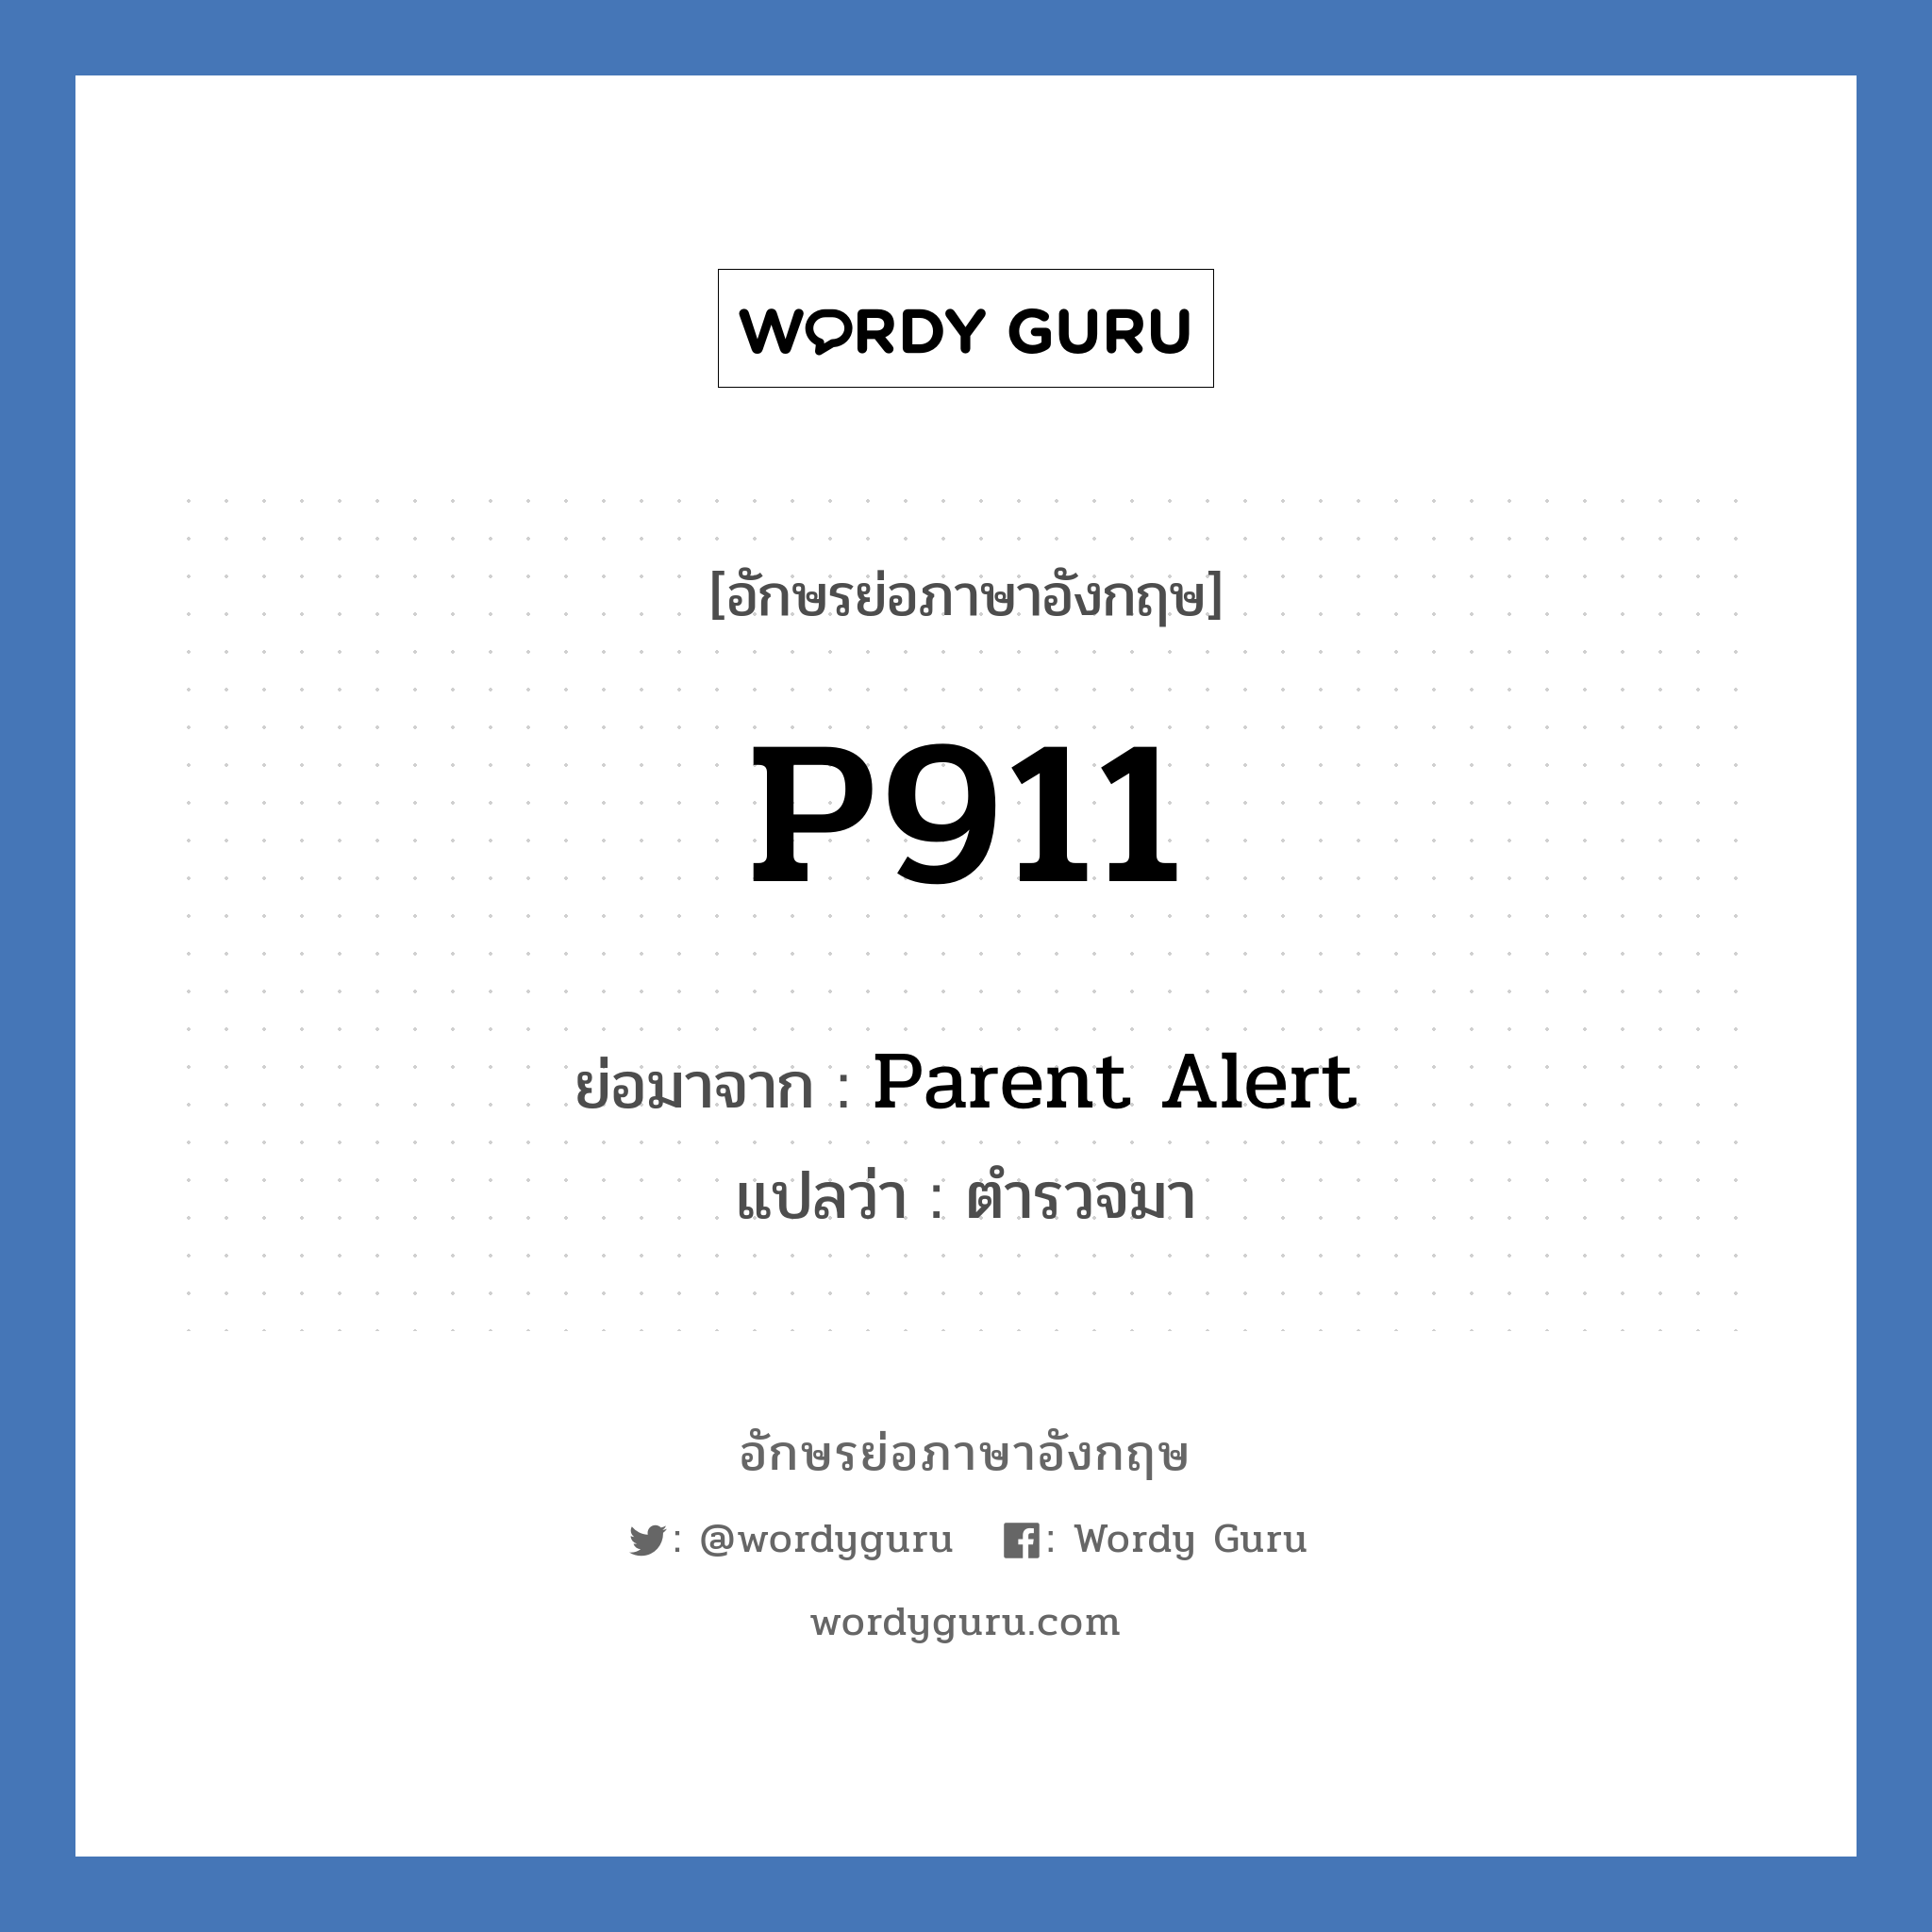 Parent Alert คำย่อคือ? แปลว่า?, อักษรย่อภาษาอังกฤษ Parent Alert ย่อมาจาก P911 แปลว่า ตำรวจมา